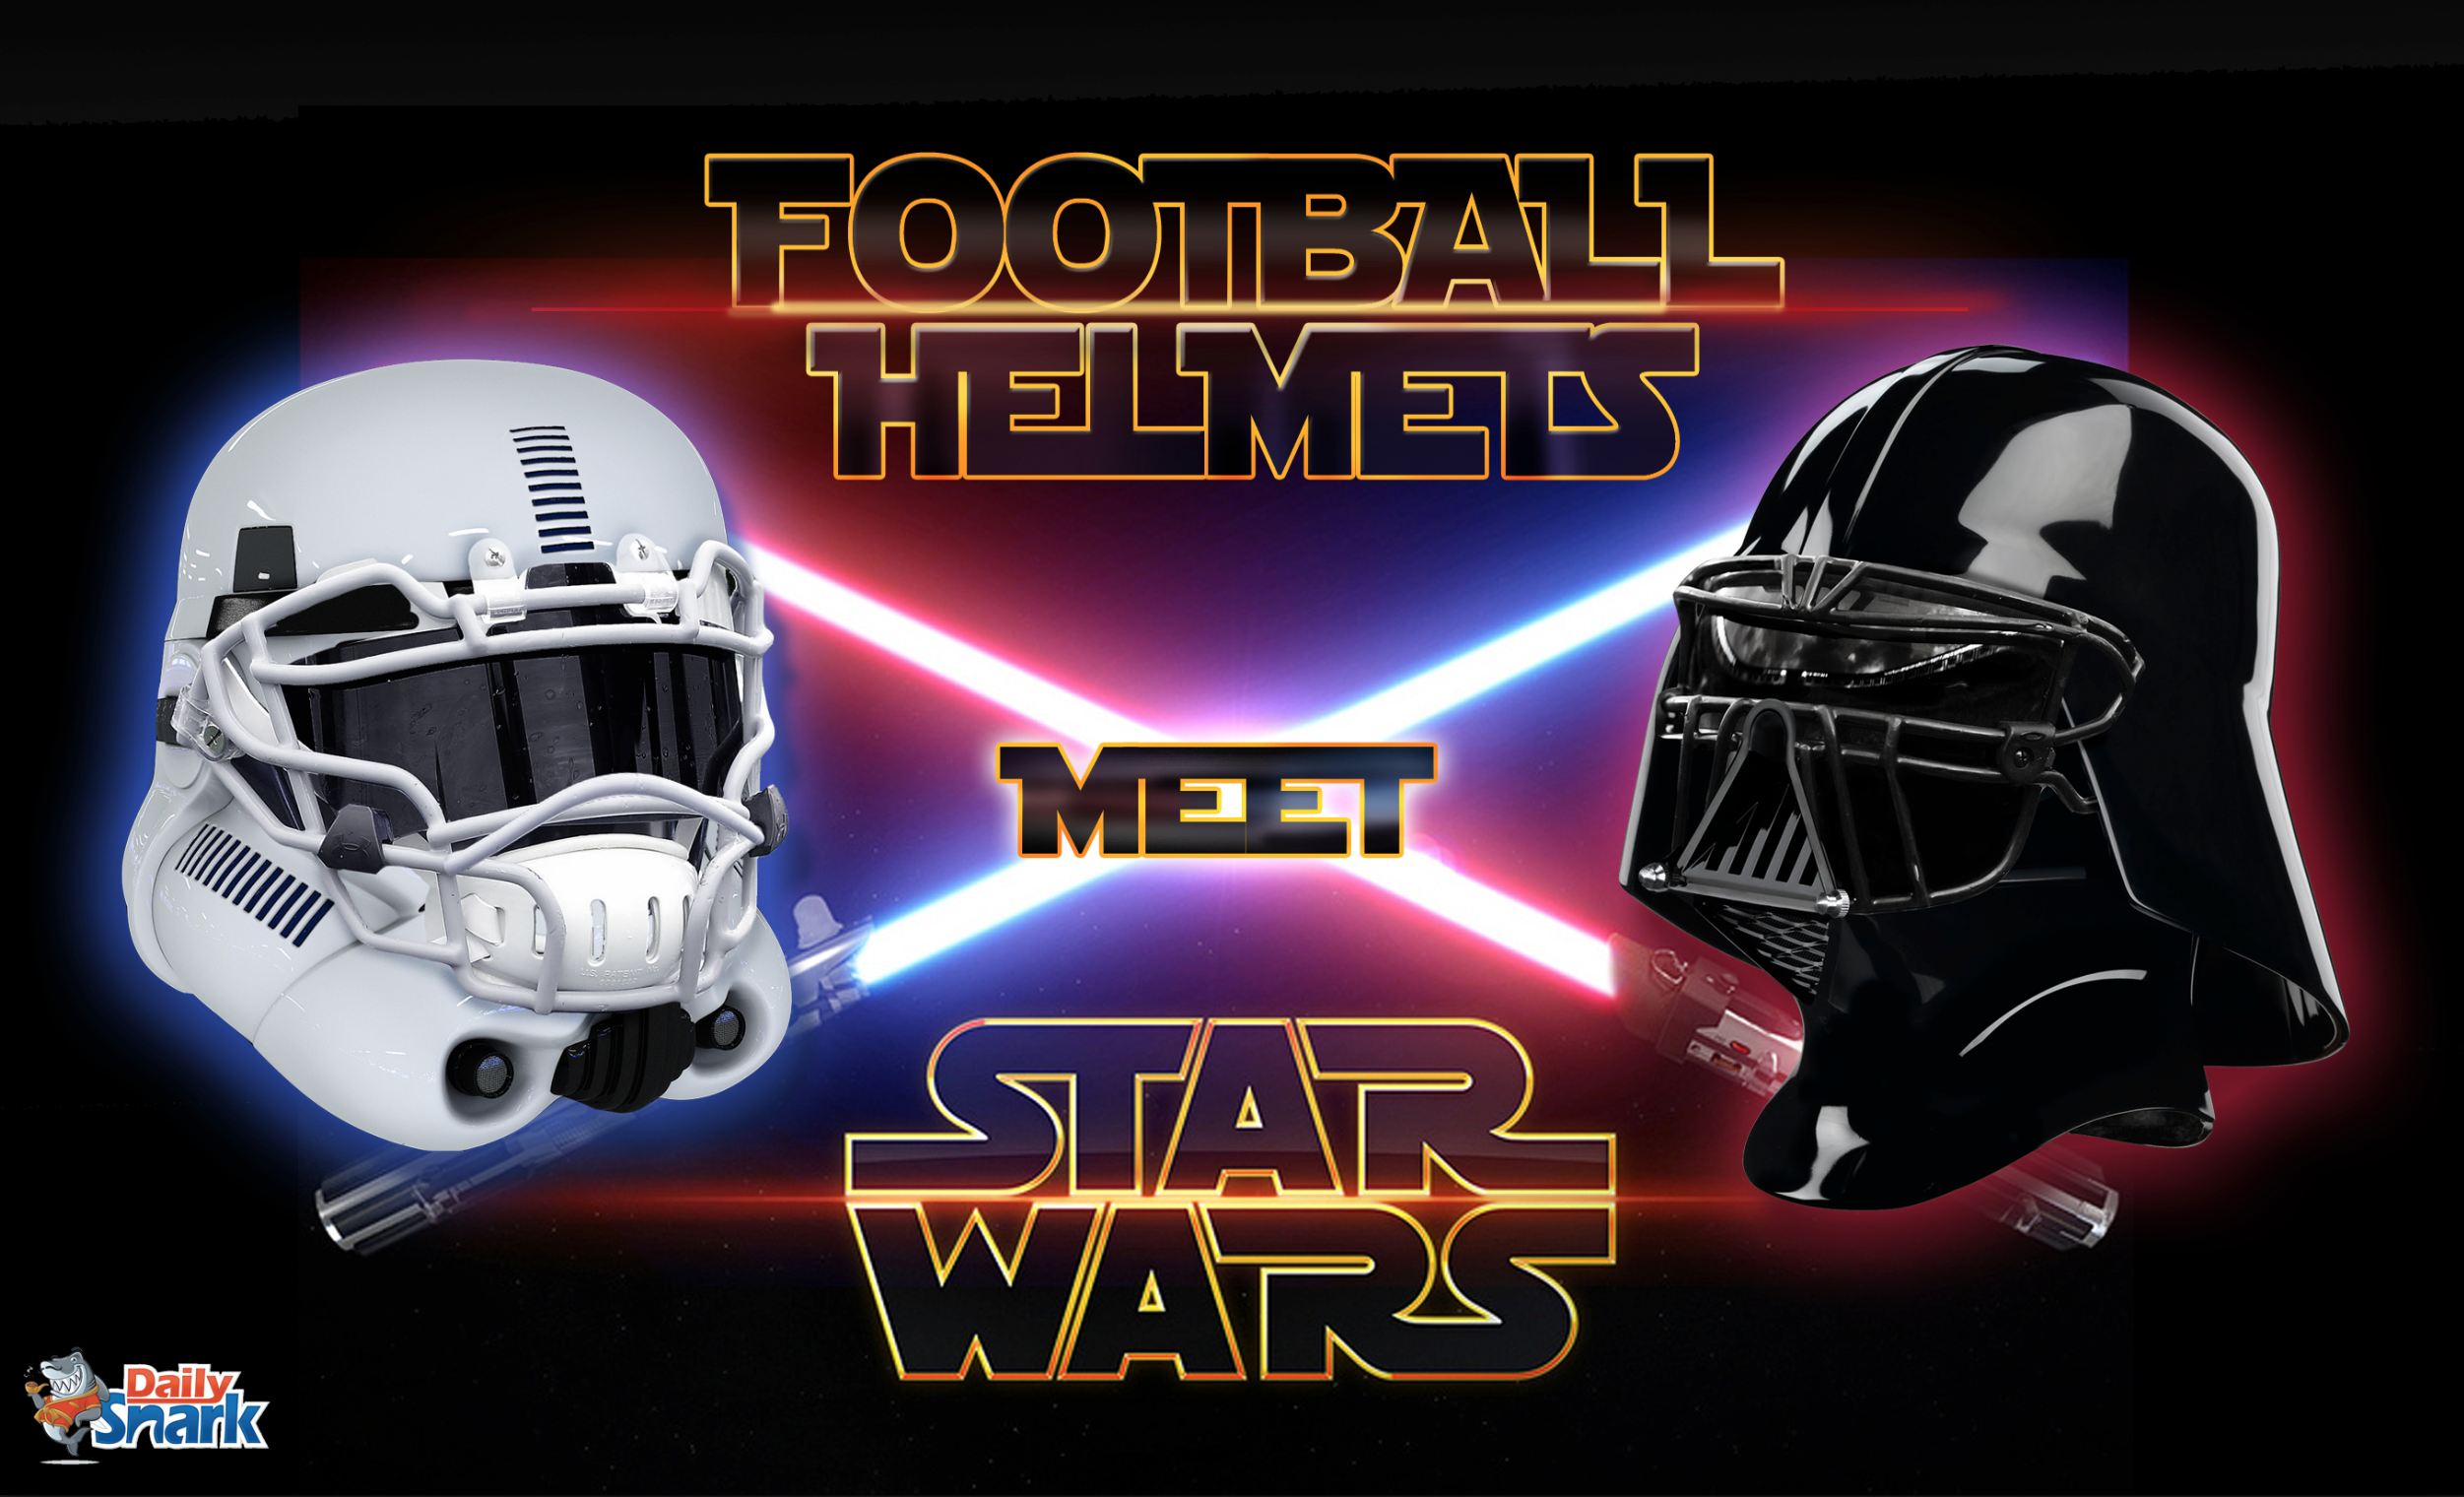 Football Helmets X Star Wars - Daily Snark